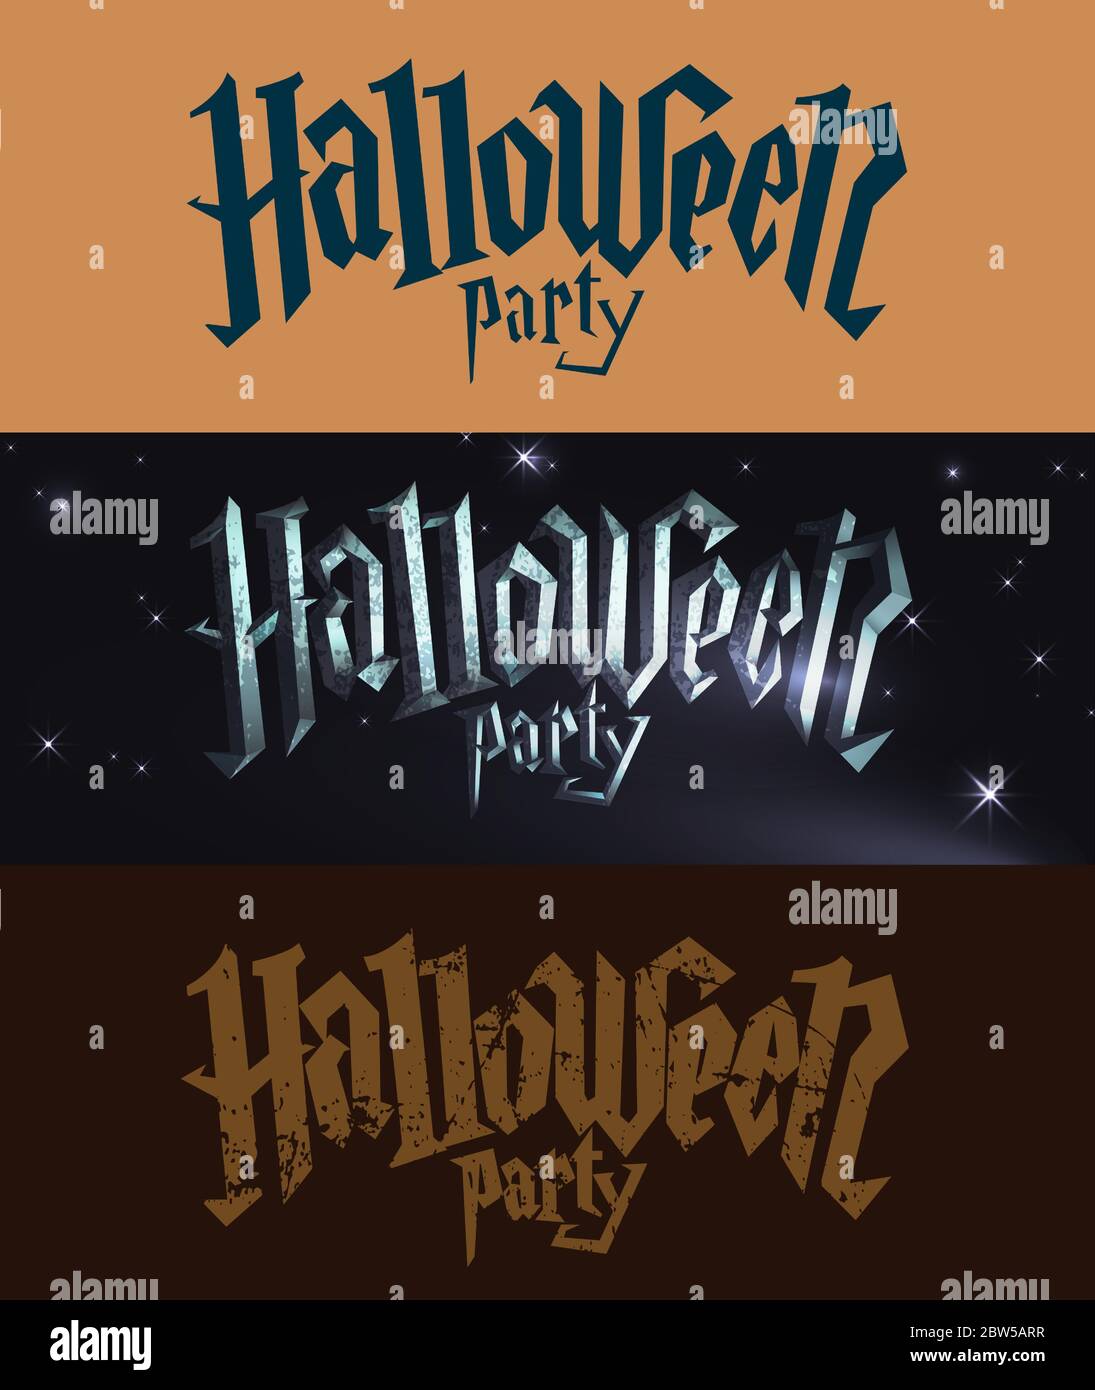 Halloween party logo collection. Stock Vector